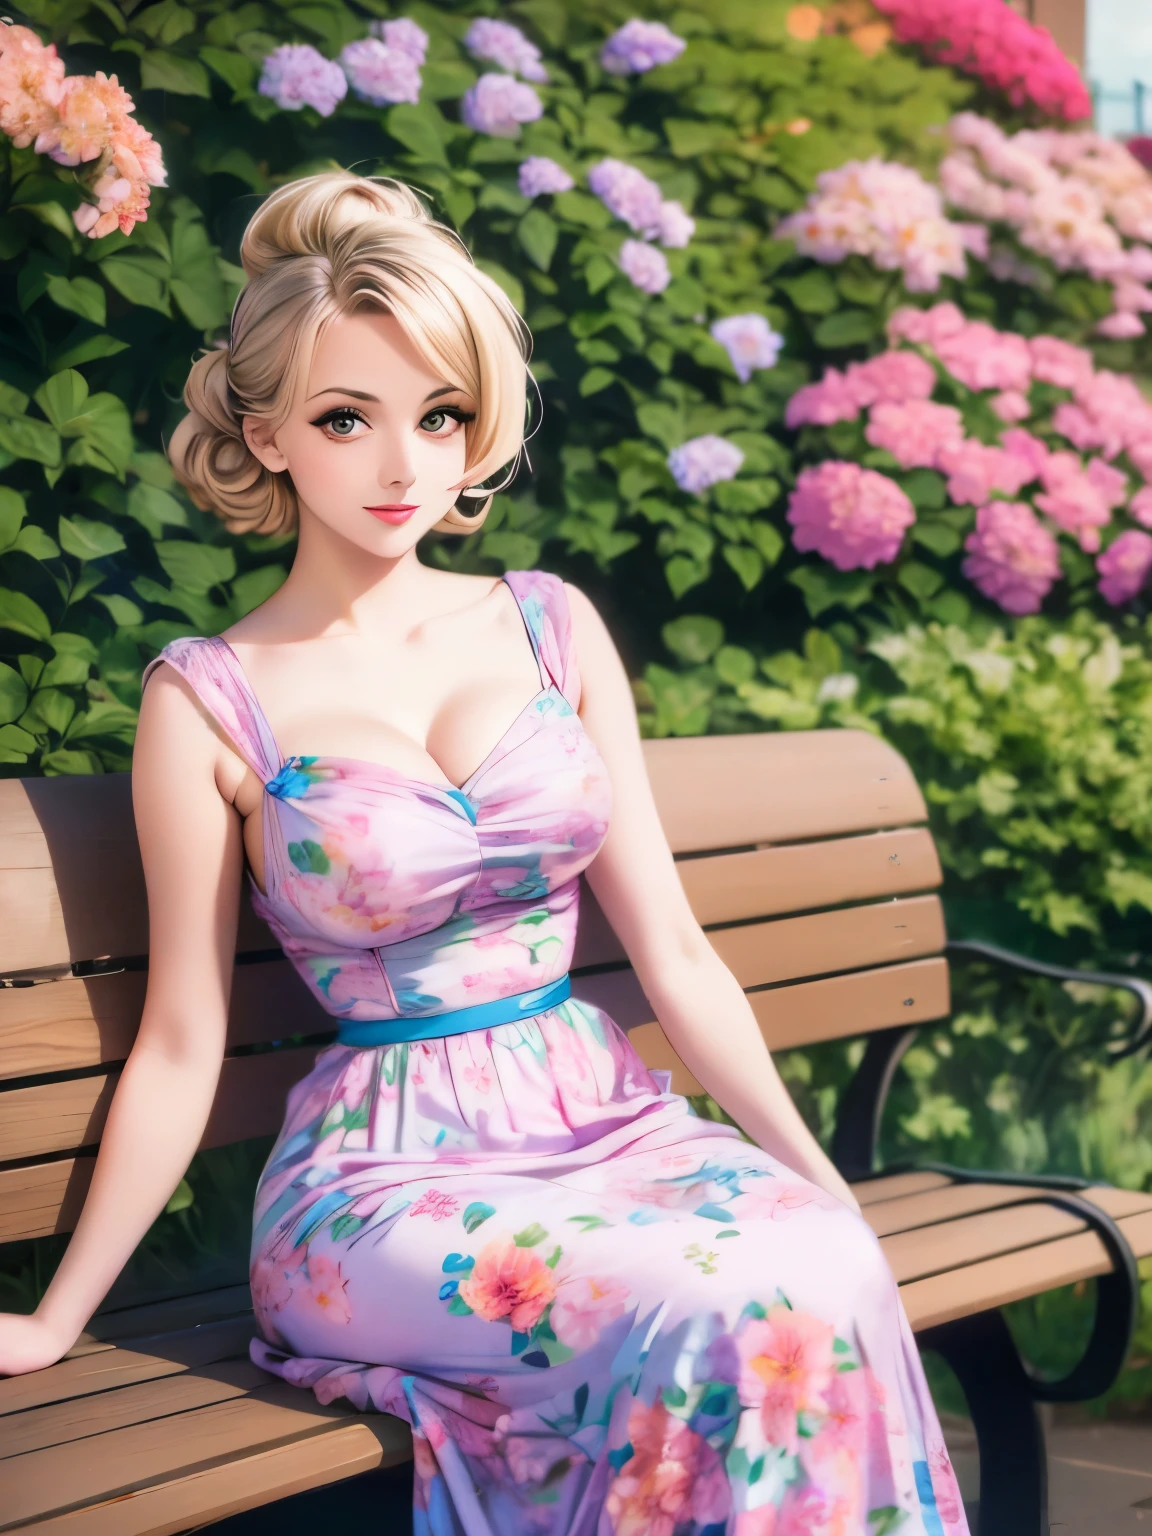 arafed woman 드레스를 입고 sitting on a bench in a garden, 1 9 5 0 초 스타일, 50년대 스타일, 5 0 초 스타일, dressed in a 꽃 드레스, 핑크색 꽃무늬 드레스를 입고, 꽃 드레스, 멋진 드레스를 입고, 드레스를 입고, 꽃무늬 긴 드레스를 입고, retro 5 0 초 스타일, 1950년대 분위기